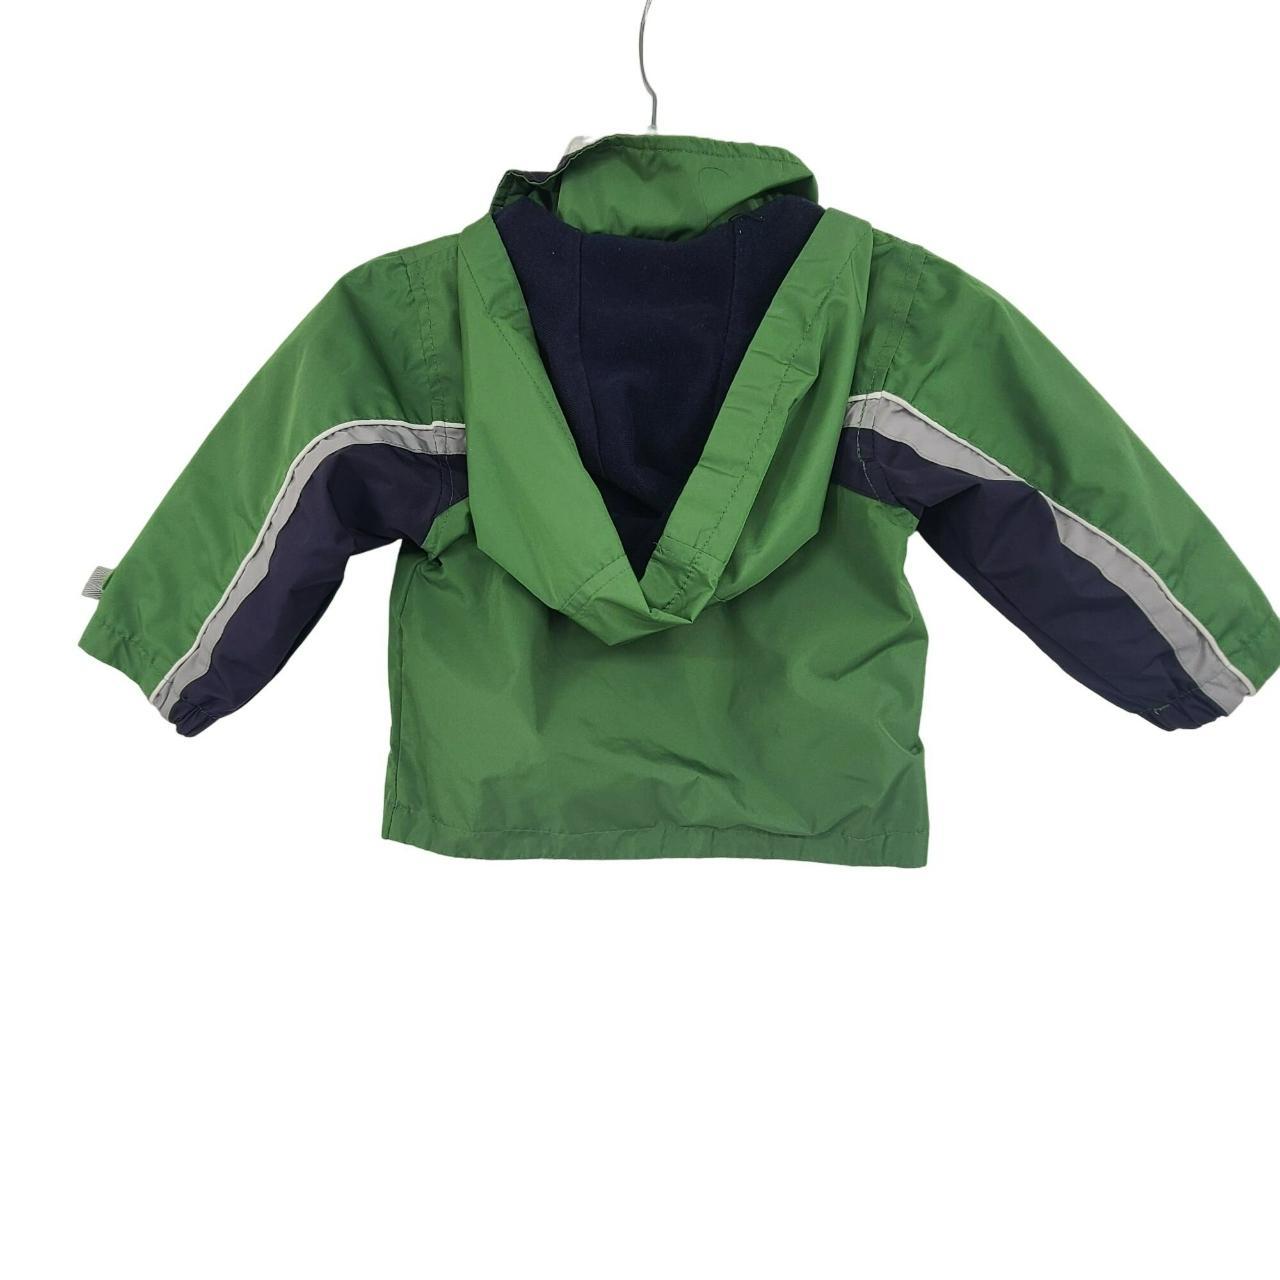 London Fog Kids Hooded Jacket Green Size 2T Good... - Depop